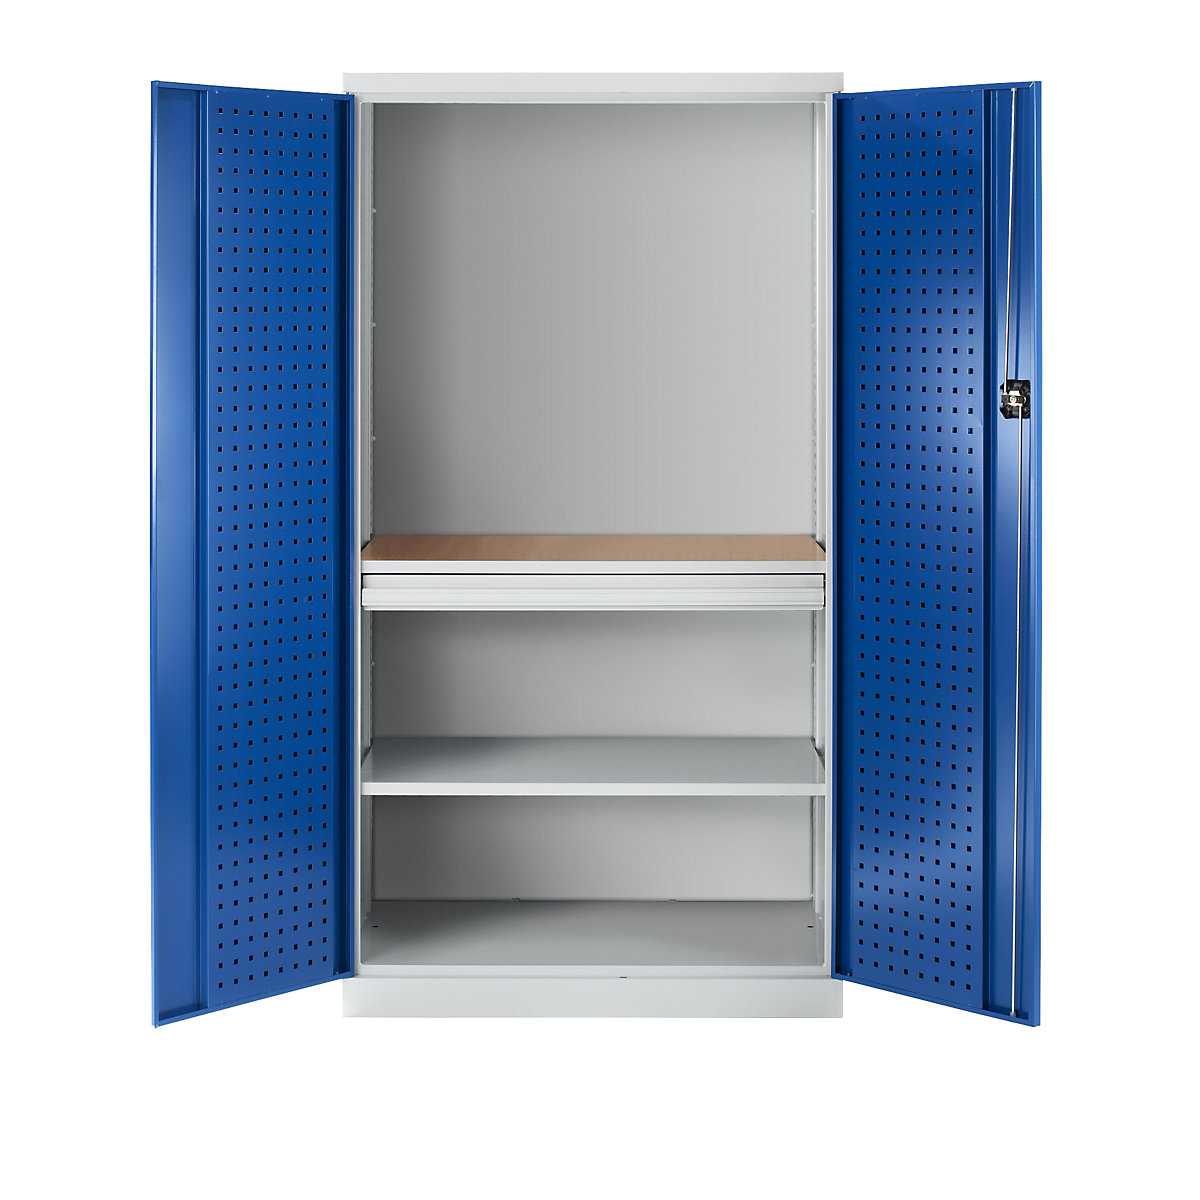 Werkzeugschrank mit Lochprägung, 1 Schublade, 1 Fachboden, 1 Arbeitsplatte – Rückwand geschlossen, Türen enzianblau-11